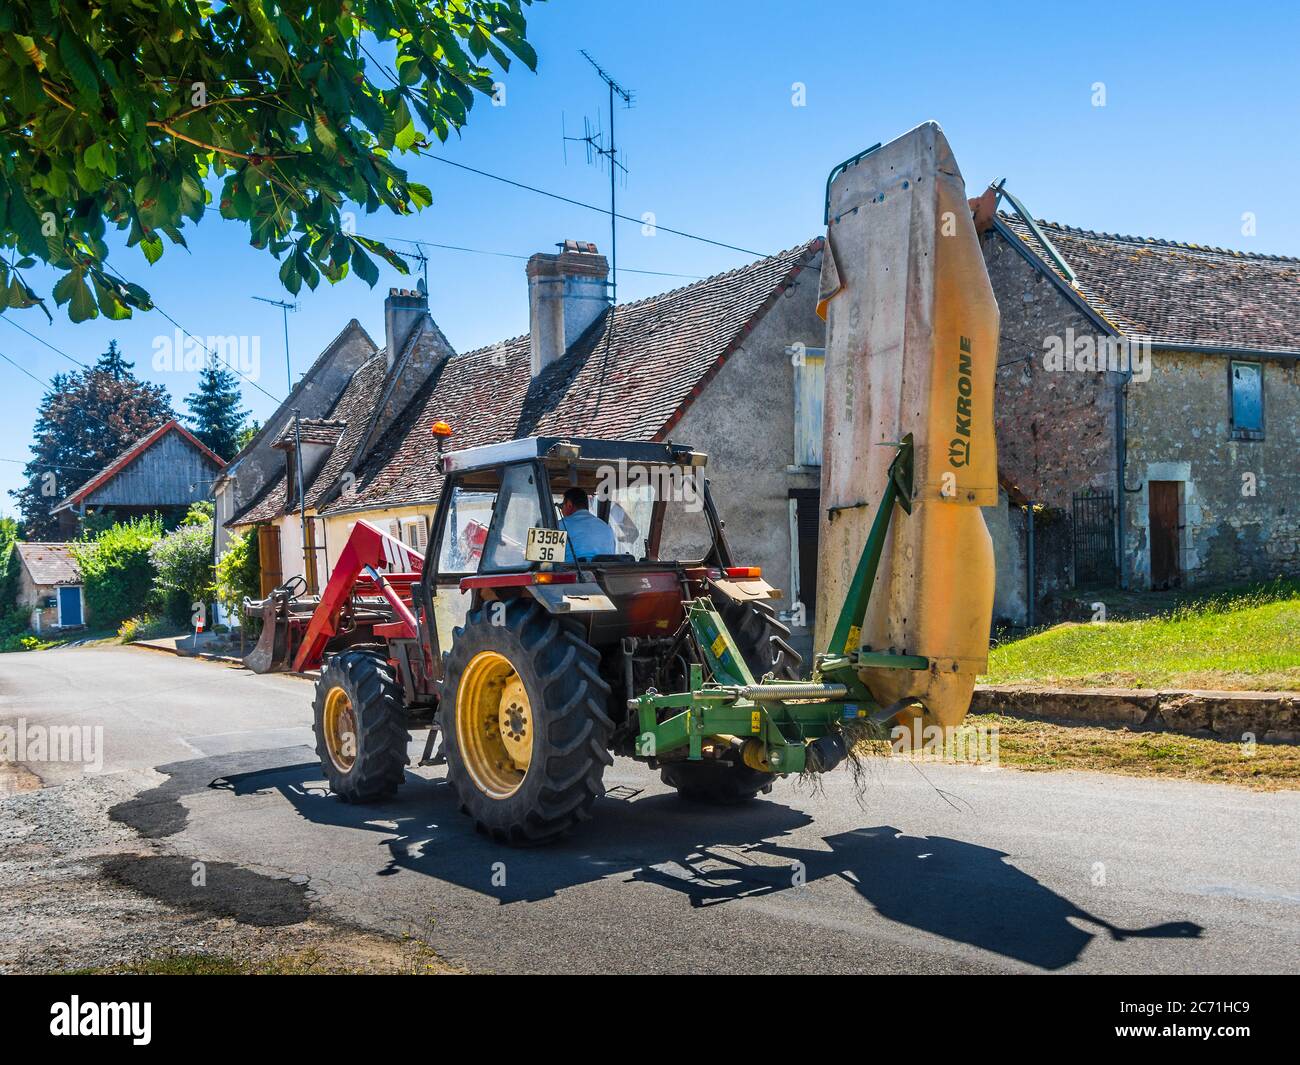 Tracteur Fiat avec foin Krone / coupe-herbe avec couvercle de sécurité traversant le village français. Banque D'Images